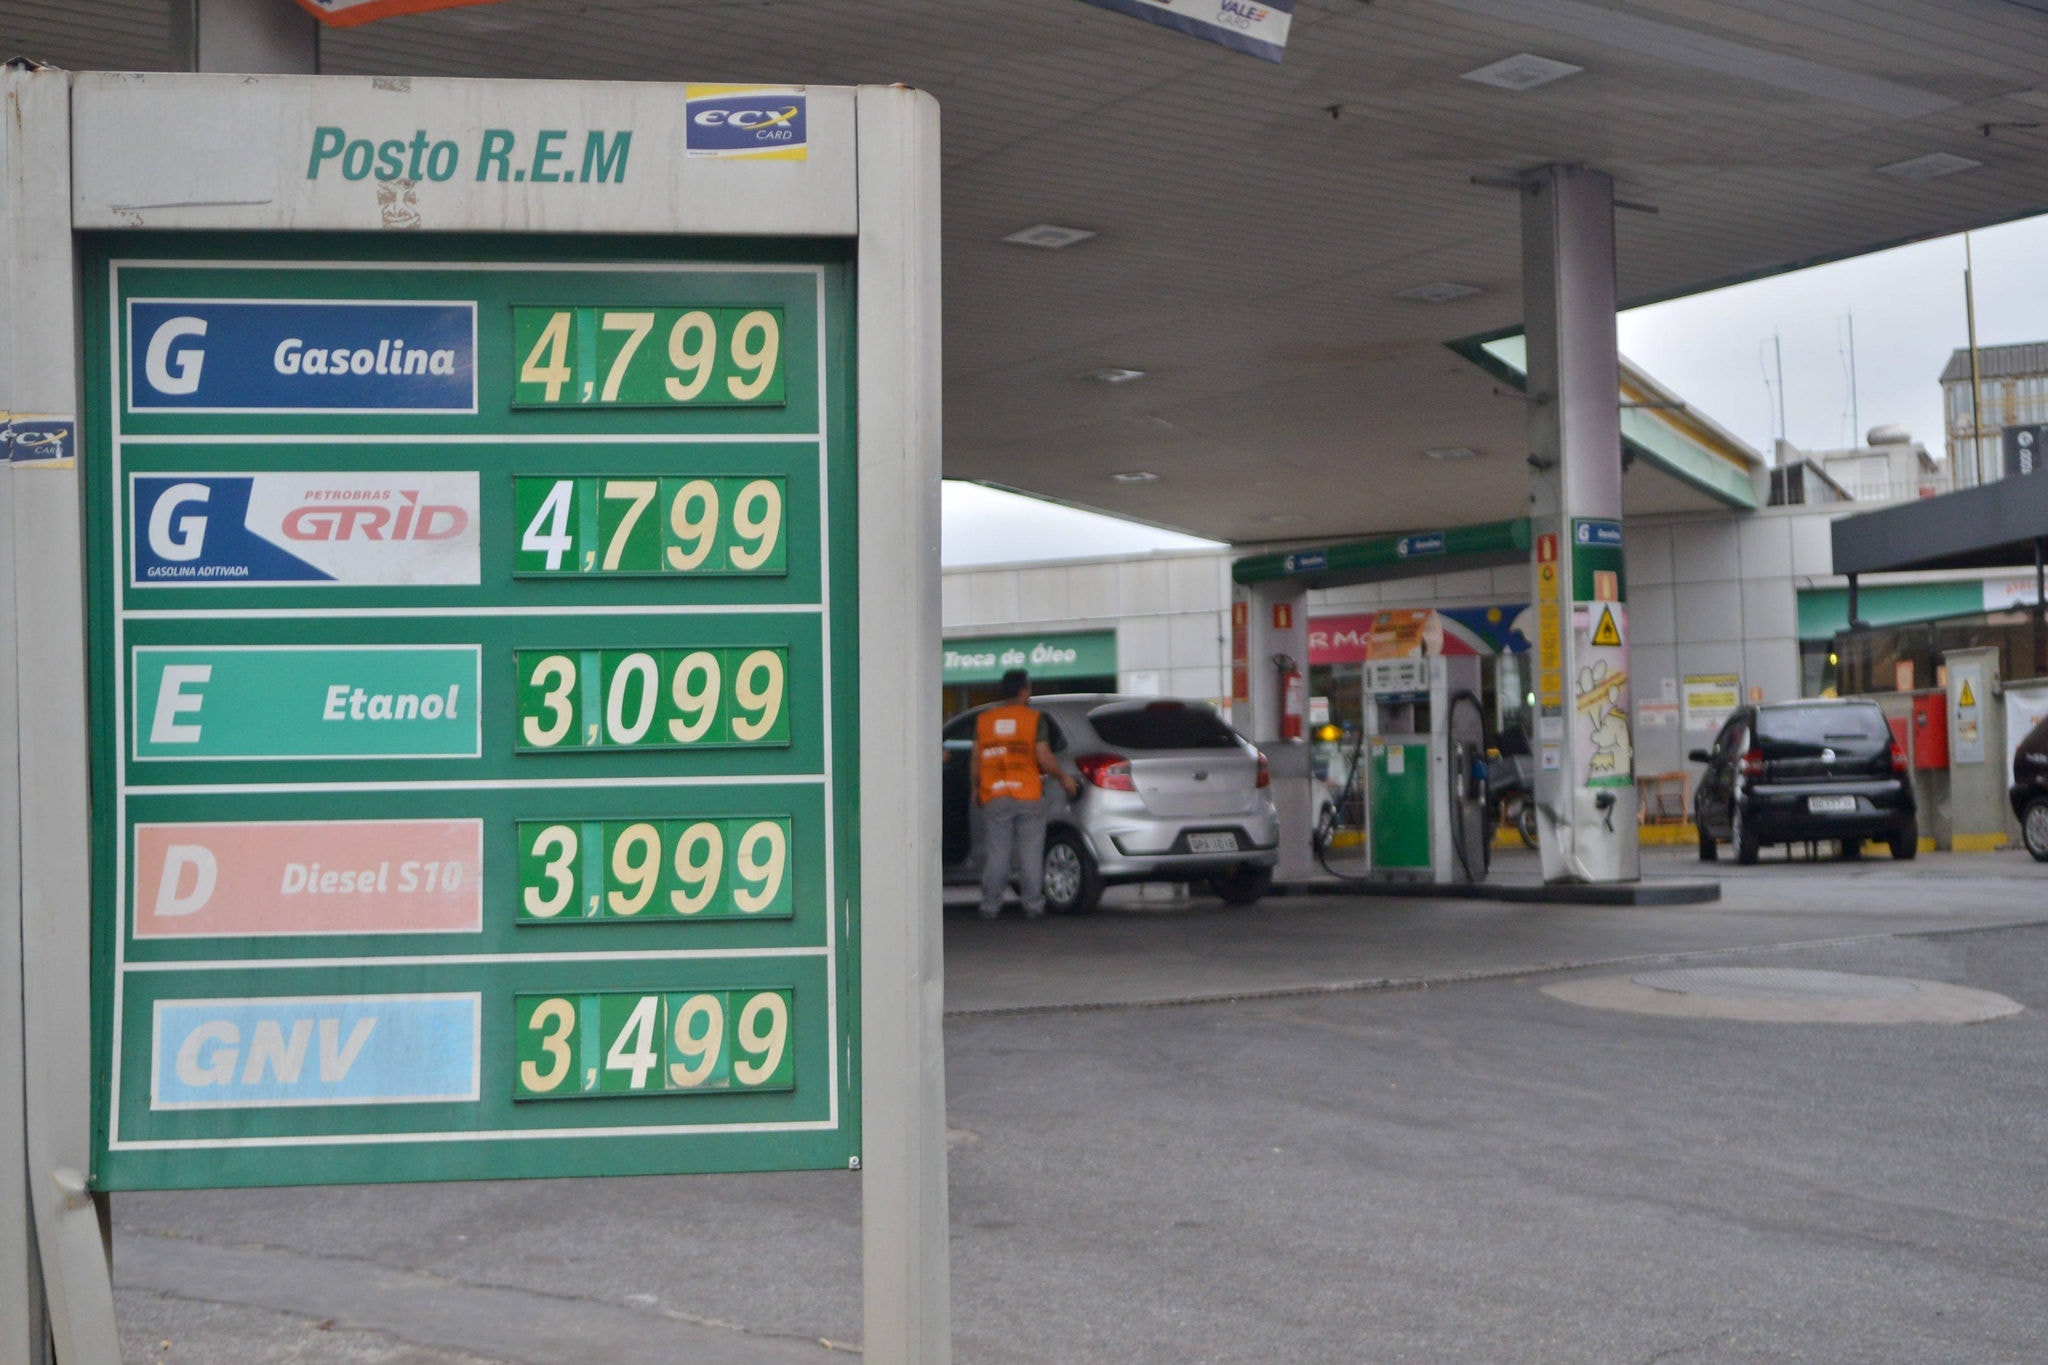 Preço da gasolina em BH e região metropolitana está variando de R$ 4,324 a R$ 4,999; consumidor deve pesquisar